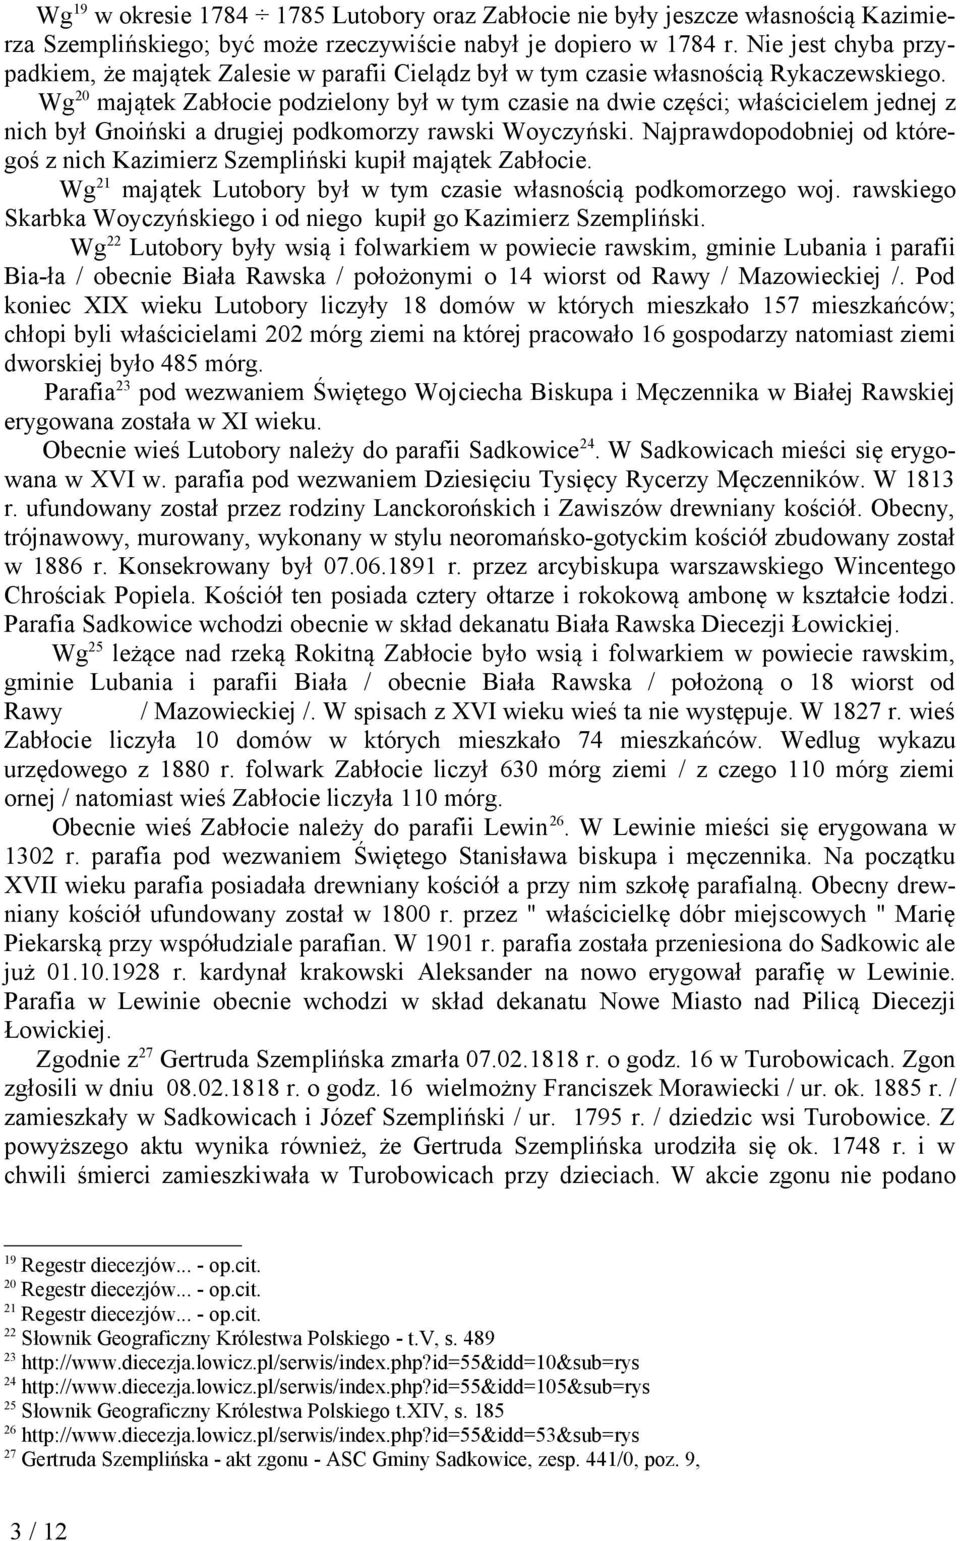 Wg 20 majątek Zabłocie podzielony był w tym czasie na dwie części; właścicielem jednej z nich był Gnoiński a drugiej podkomorzy rawski Woyczyński.